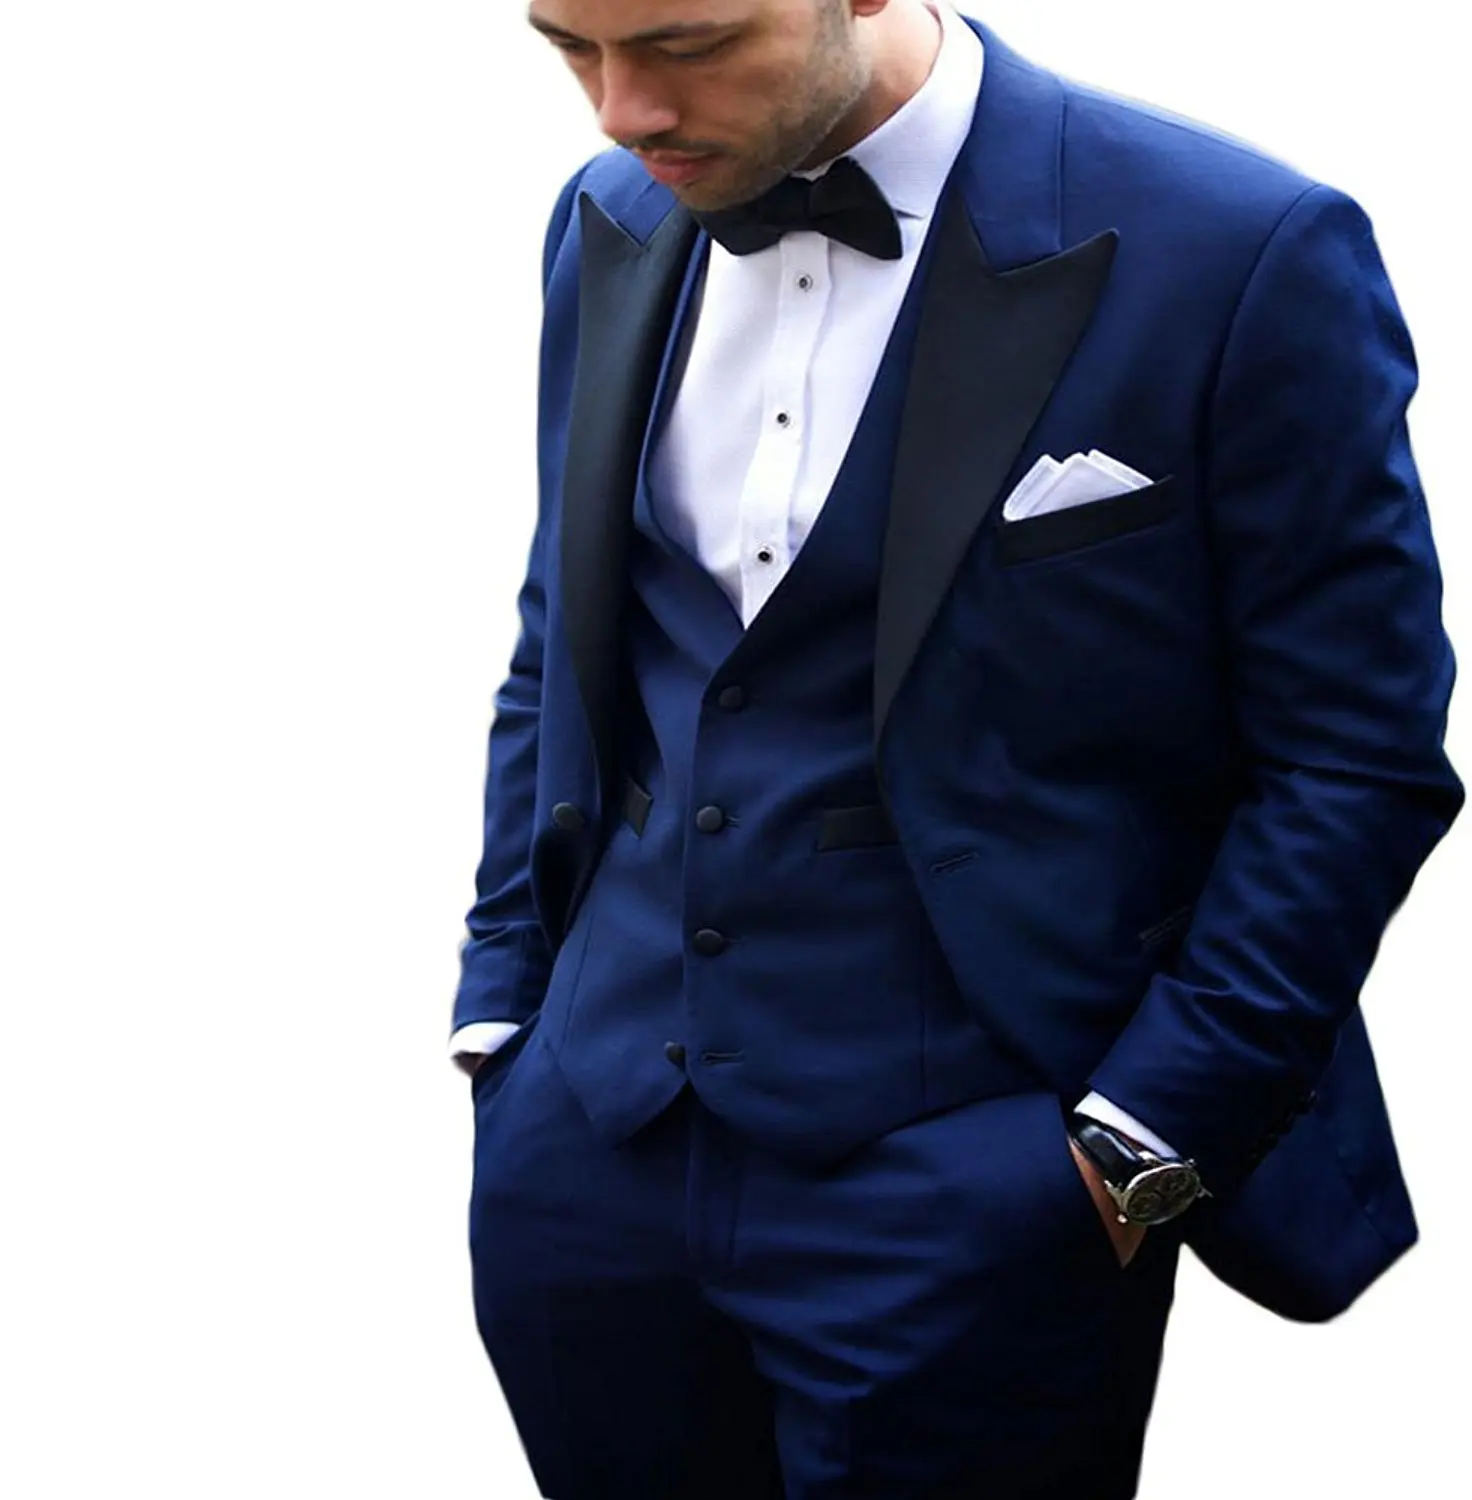 Men's New Fashion Royal Blue Men Suit 3 Pieces Wedding Suits Groom